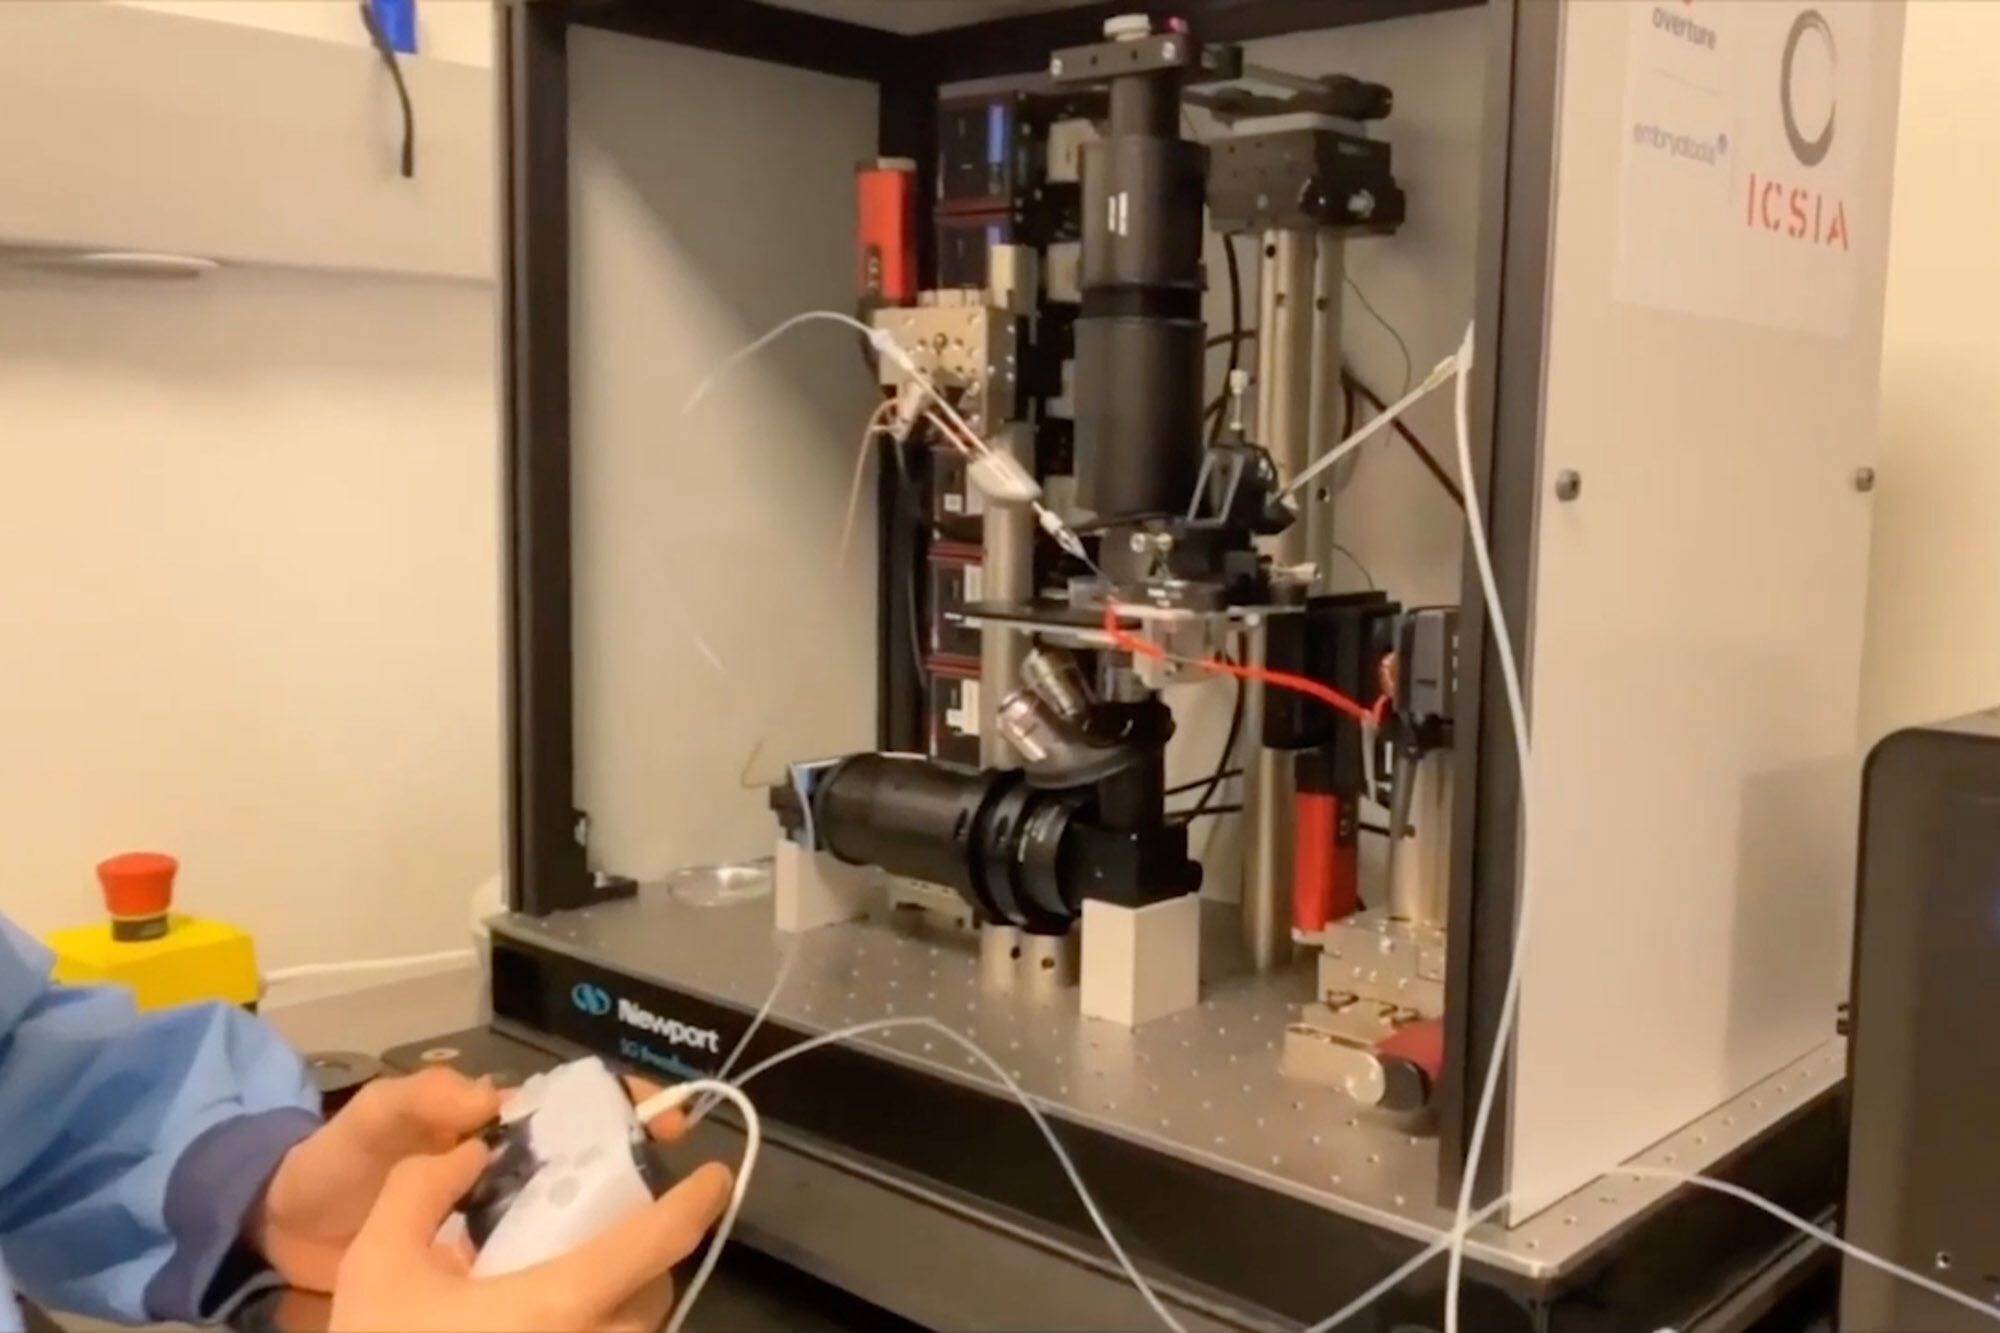 Zapłodnienie komórki jajowej przy użyciu robota sterowanego kontrolerem DualSense.